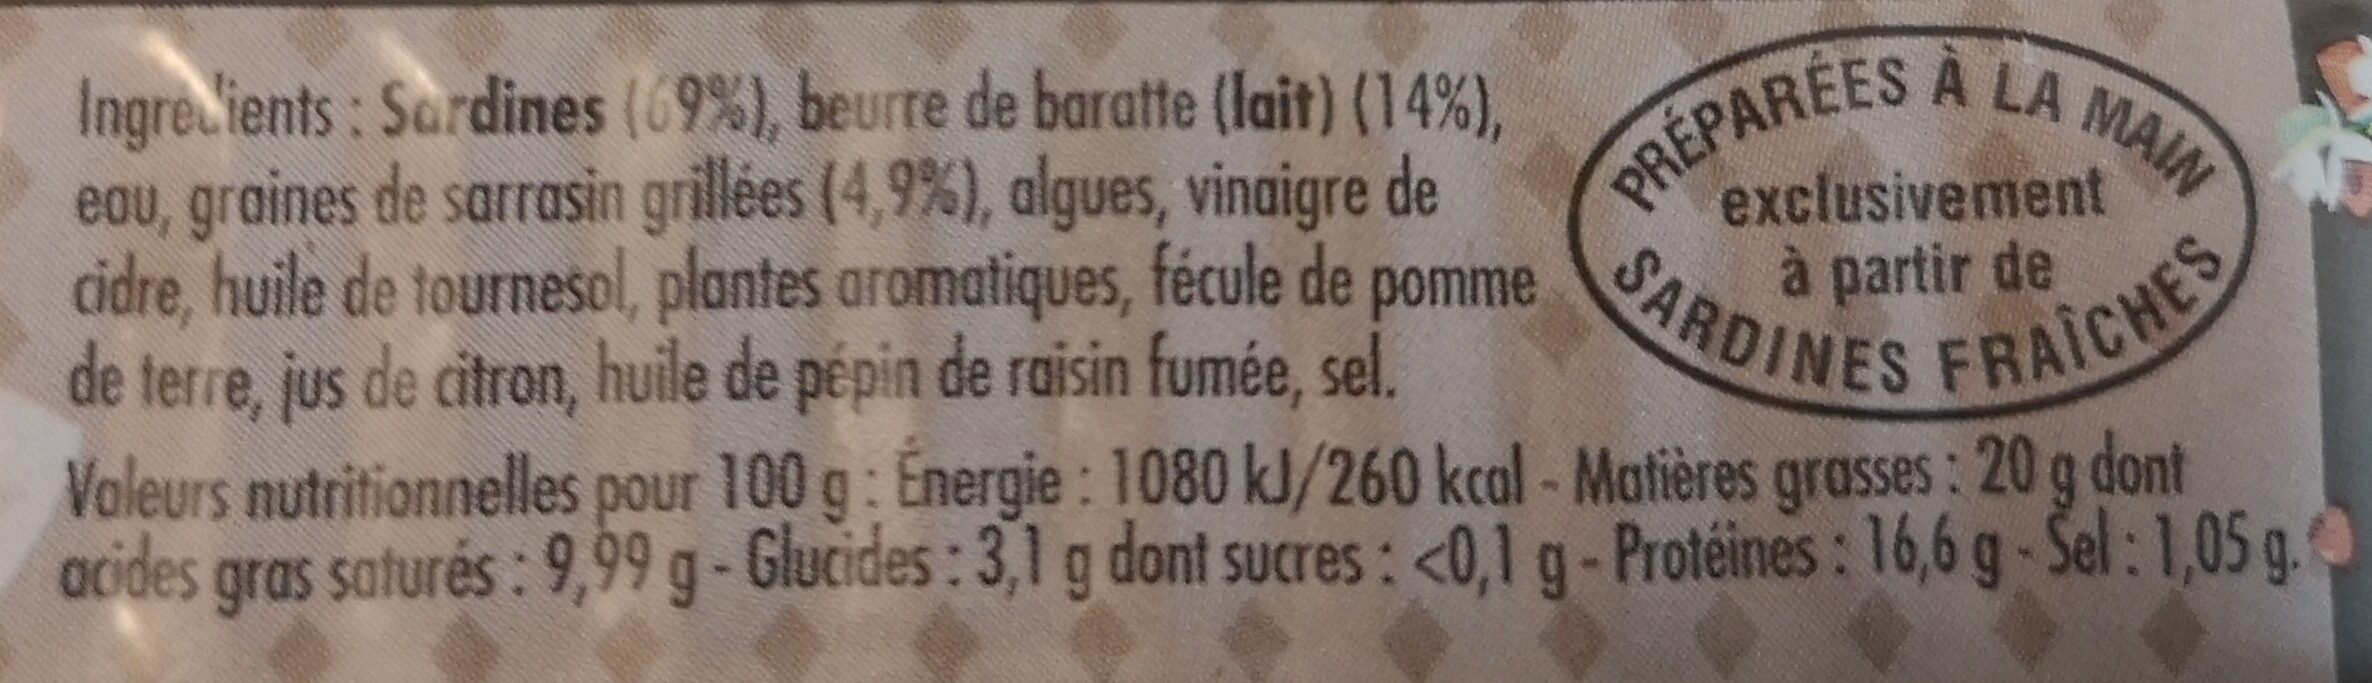 Sardines cuisinées au sarrazin et au beurre de baratte - حقائق غذائية - fr